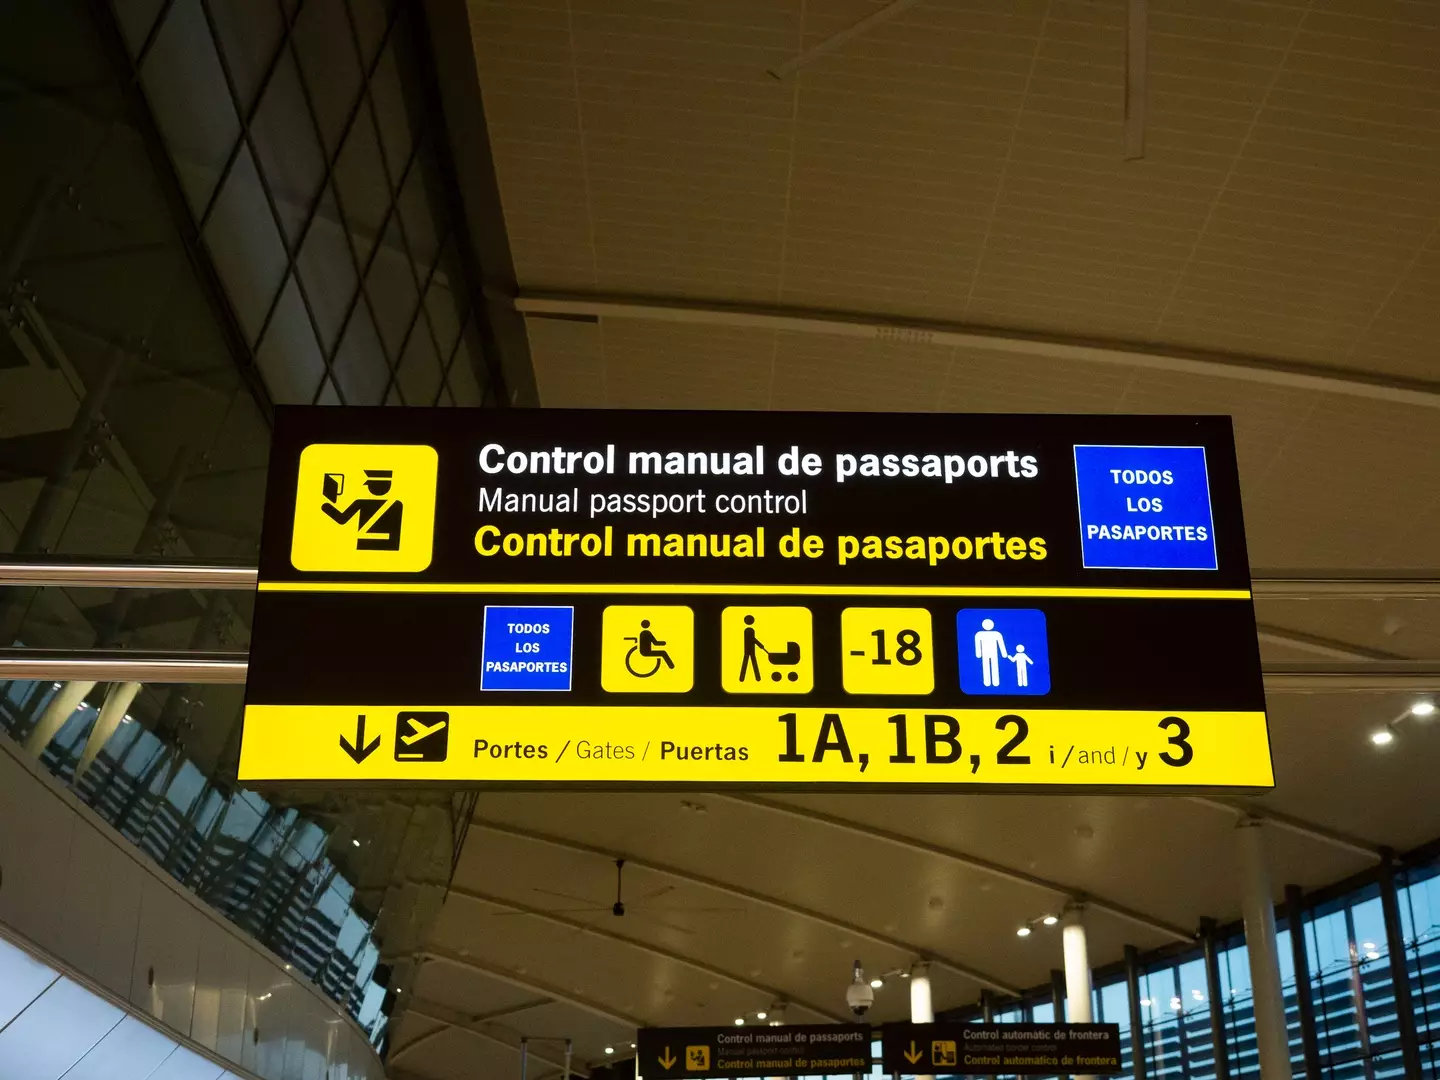 Passport control in Spain.